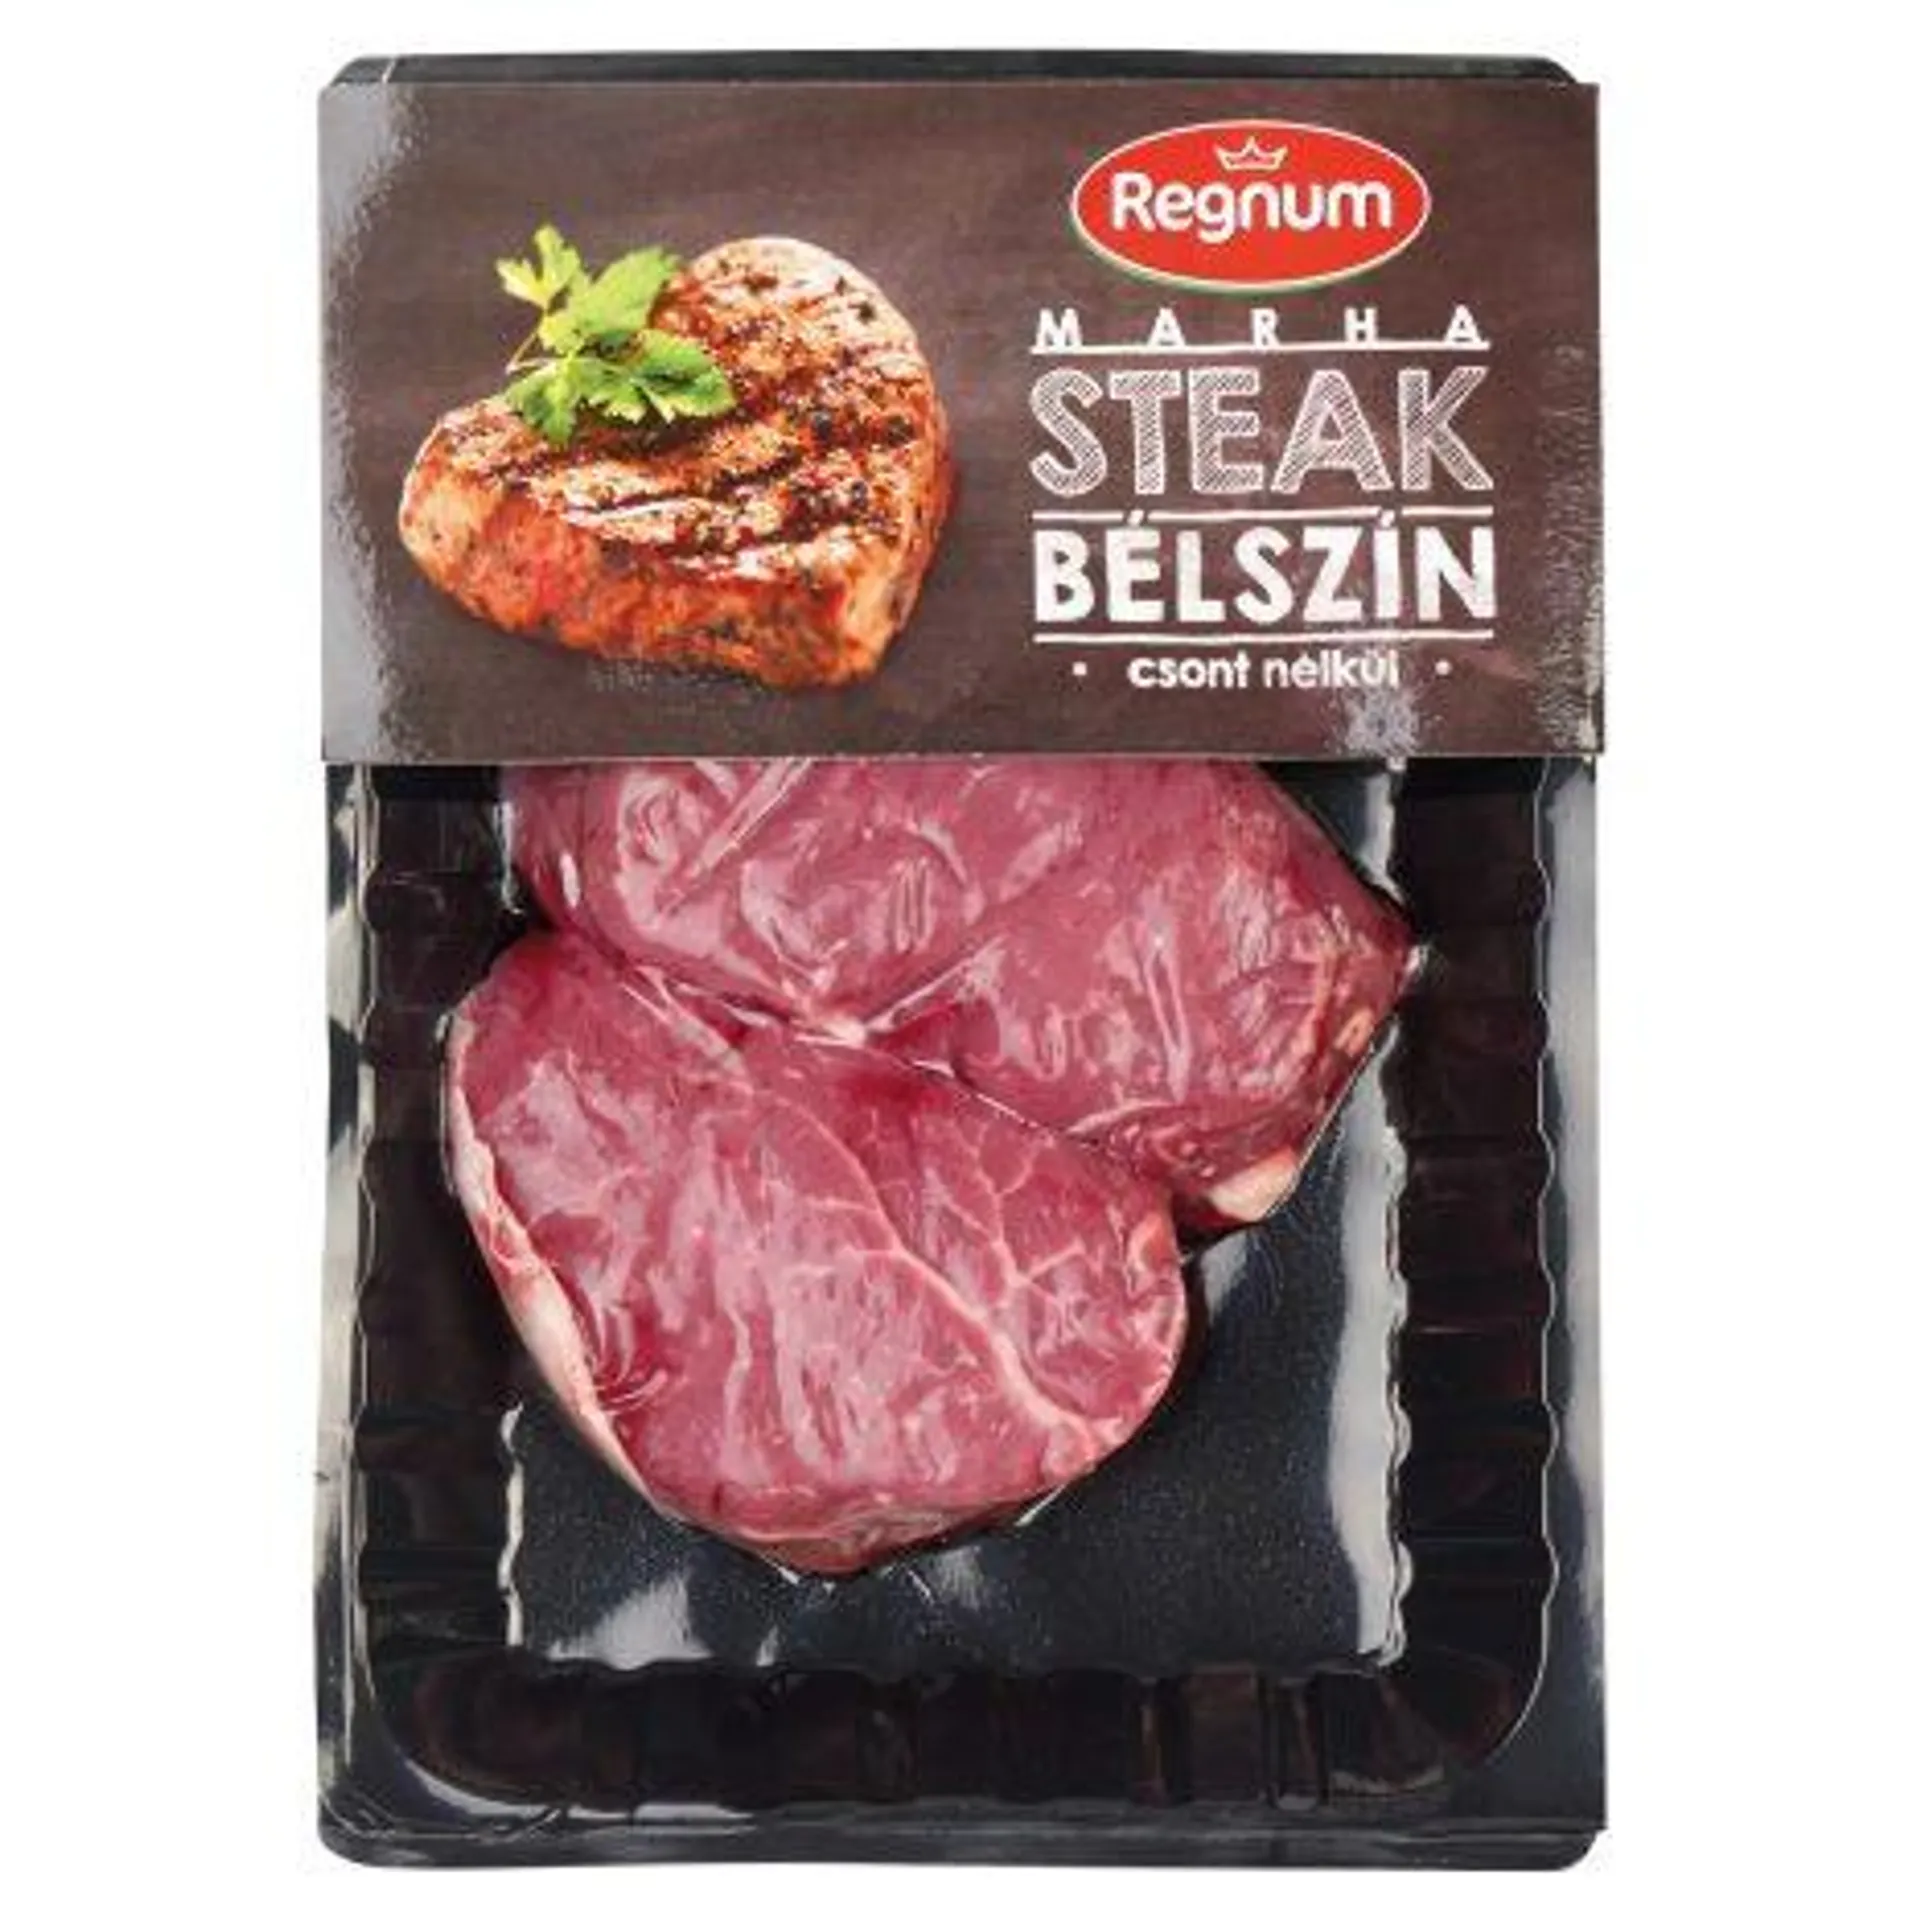 REGNUM marha bélszín steak csont nélkül